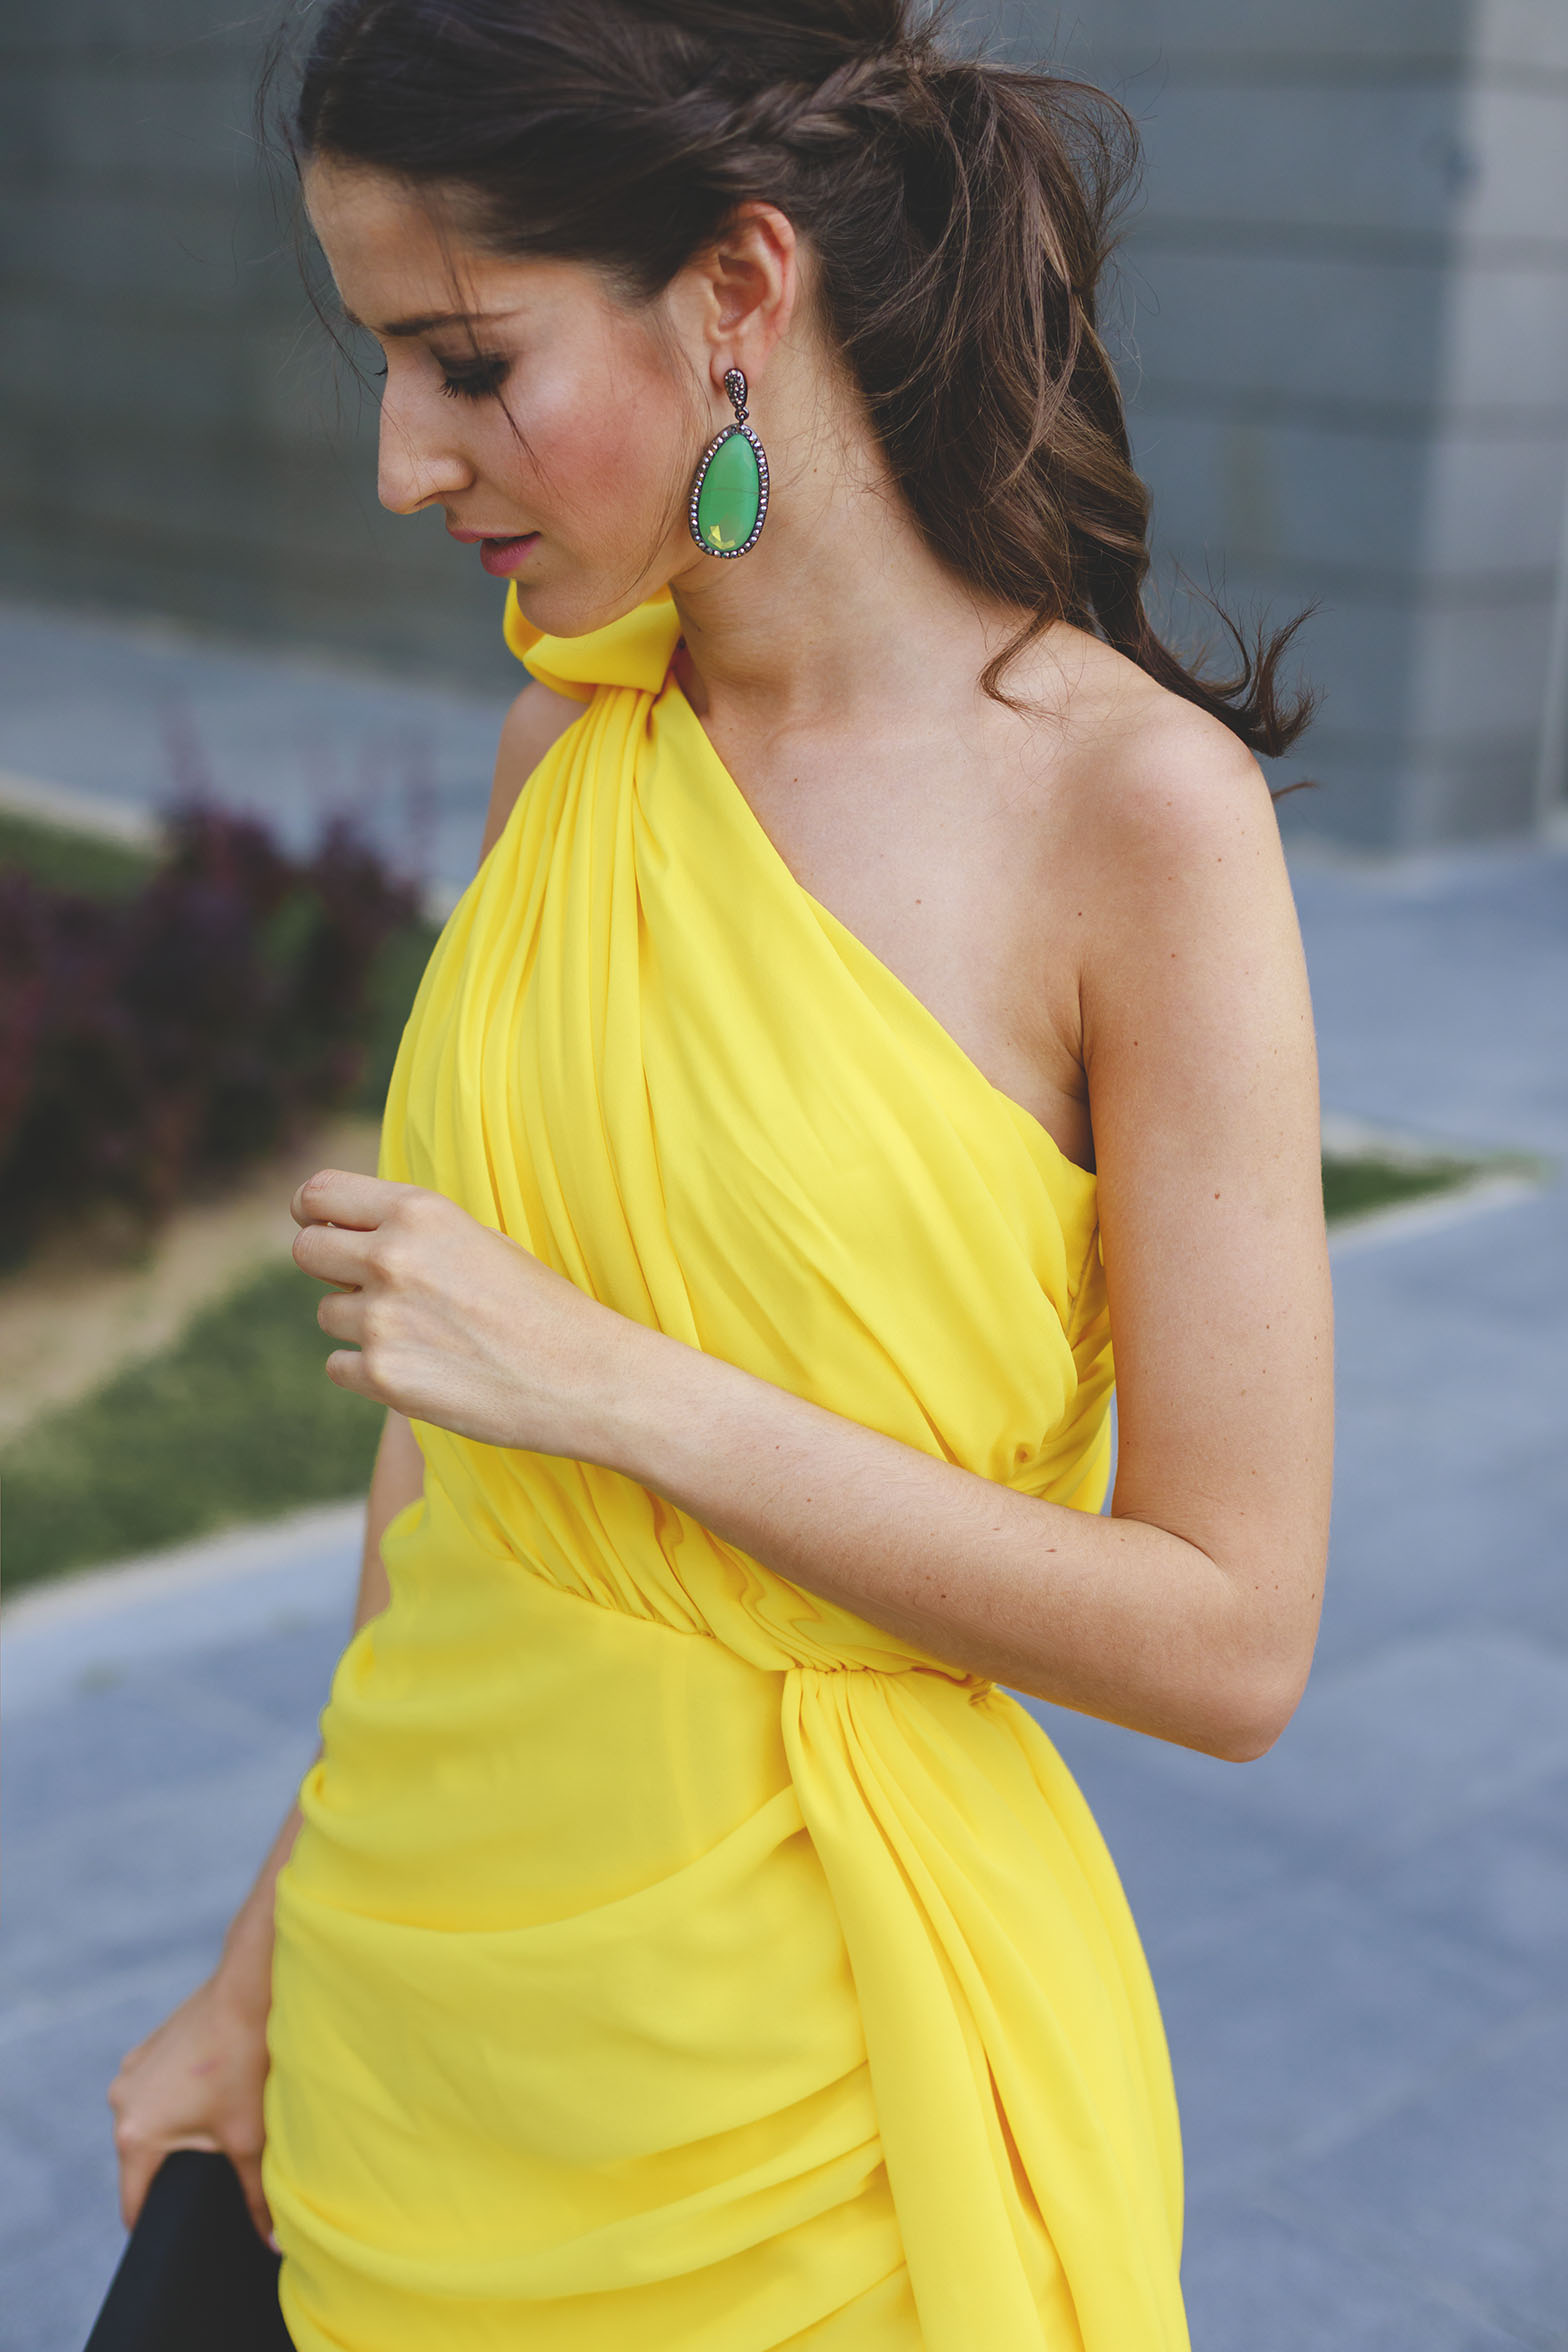 Vaciar la basura Concurso cemento Look invitada: vestido amarillo asimétrico | Invitada Perfecta